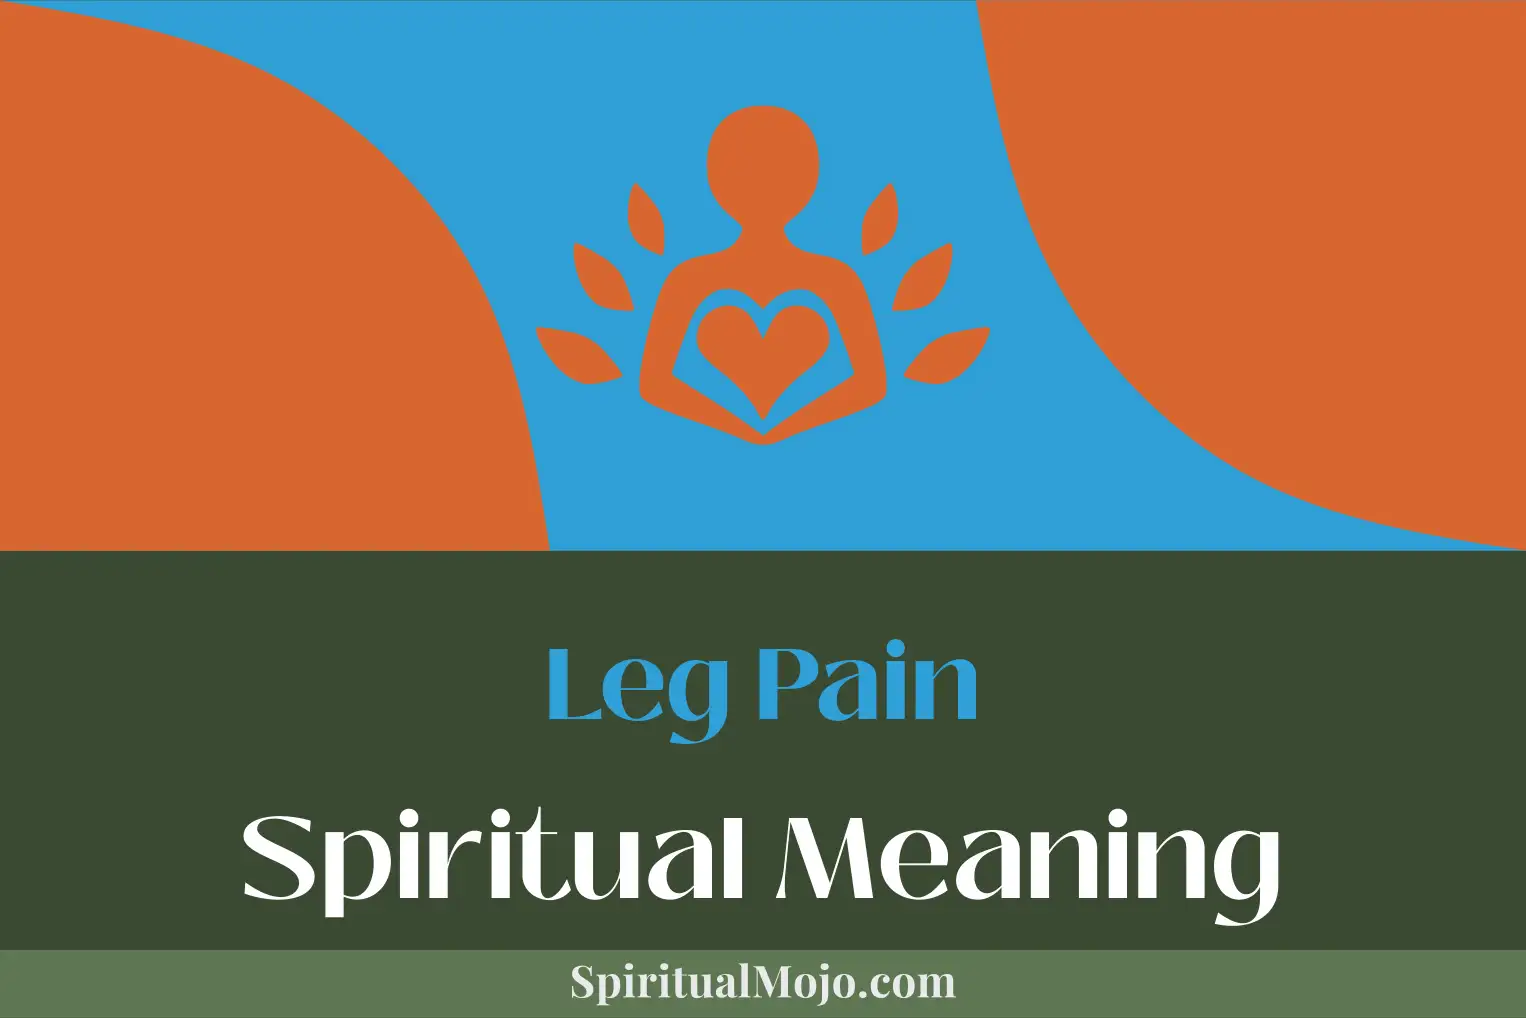 leg pain spiritual meaning